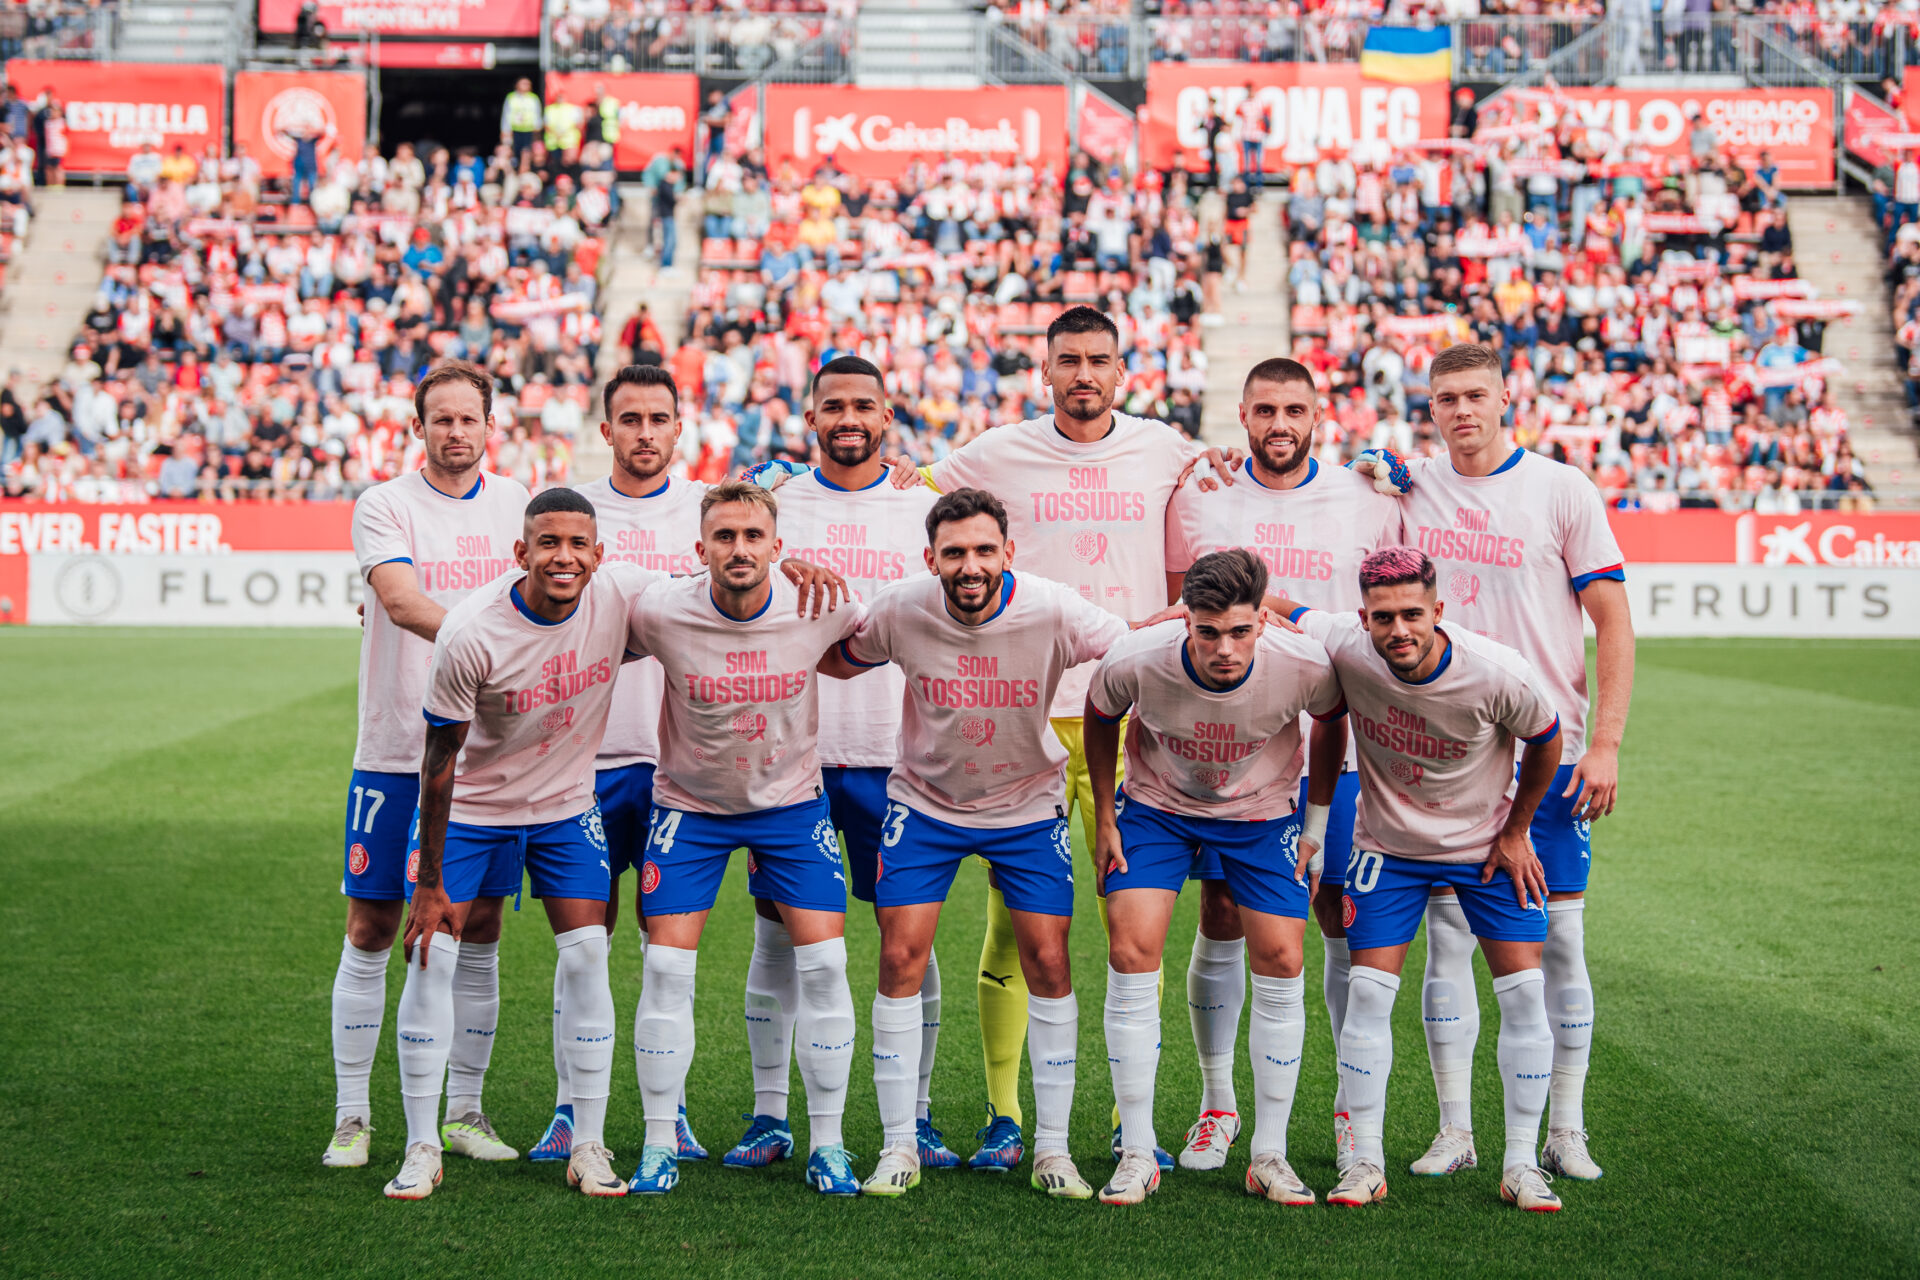 Els jugadors del Girona FC llueixen la samarreta solidària "Som Tossudes". // Imatge: Girona FC